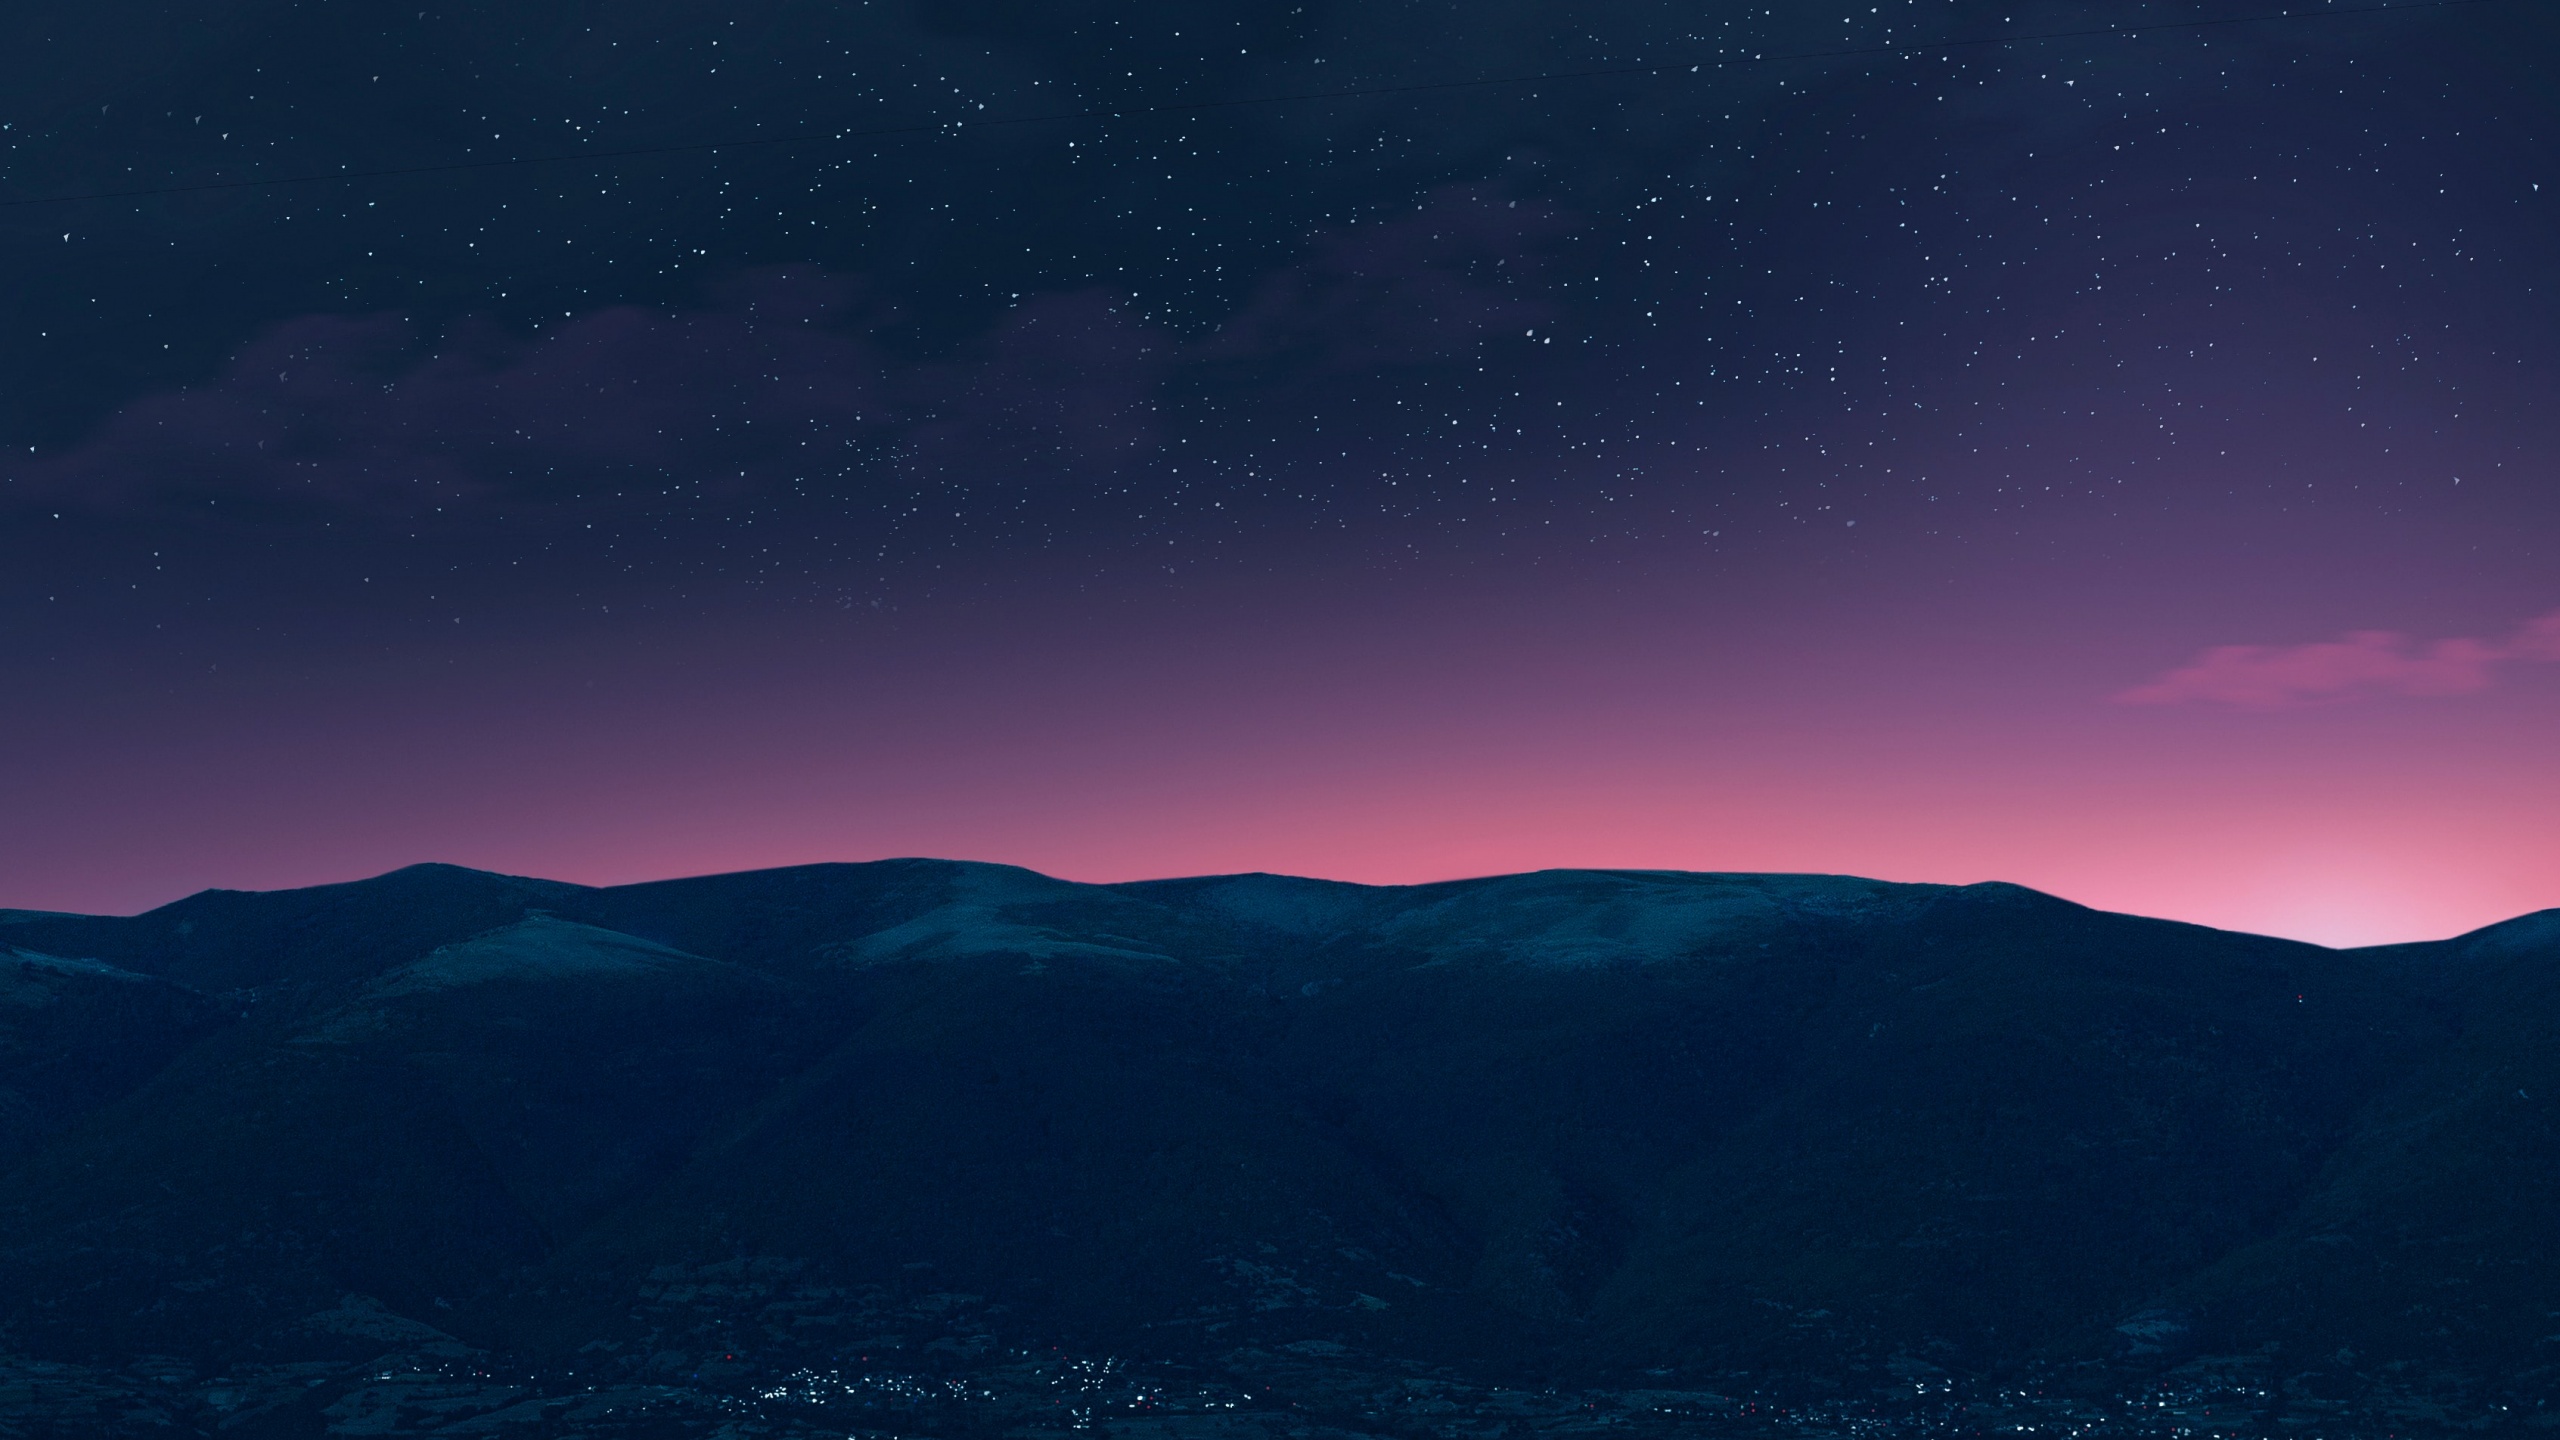 Hình nền Mountain và Starry sky đen trắng 4K đến từ những khung cảnh đẹp như tranh sẽ khiến bạn phải trầm trồ và ngưỡng mộ. Tưởng chừng như những gam màu đơn giản sẽ khiến cho không gian trở nên thiếu sức sống, nhưng thực tế lại hoàn toàn ngược lại. Nhấp chuột ngay để cảm nhận.